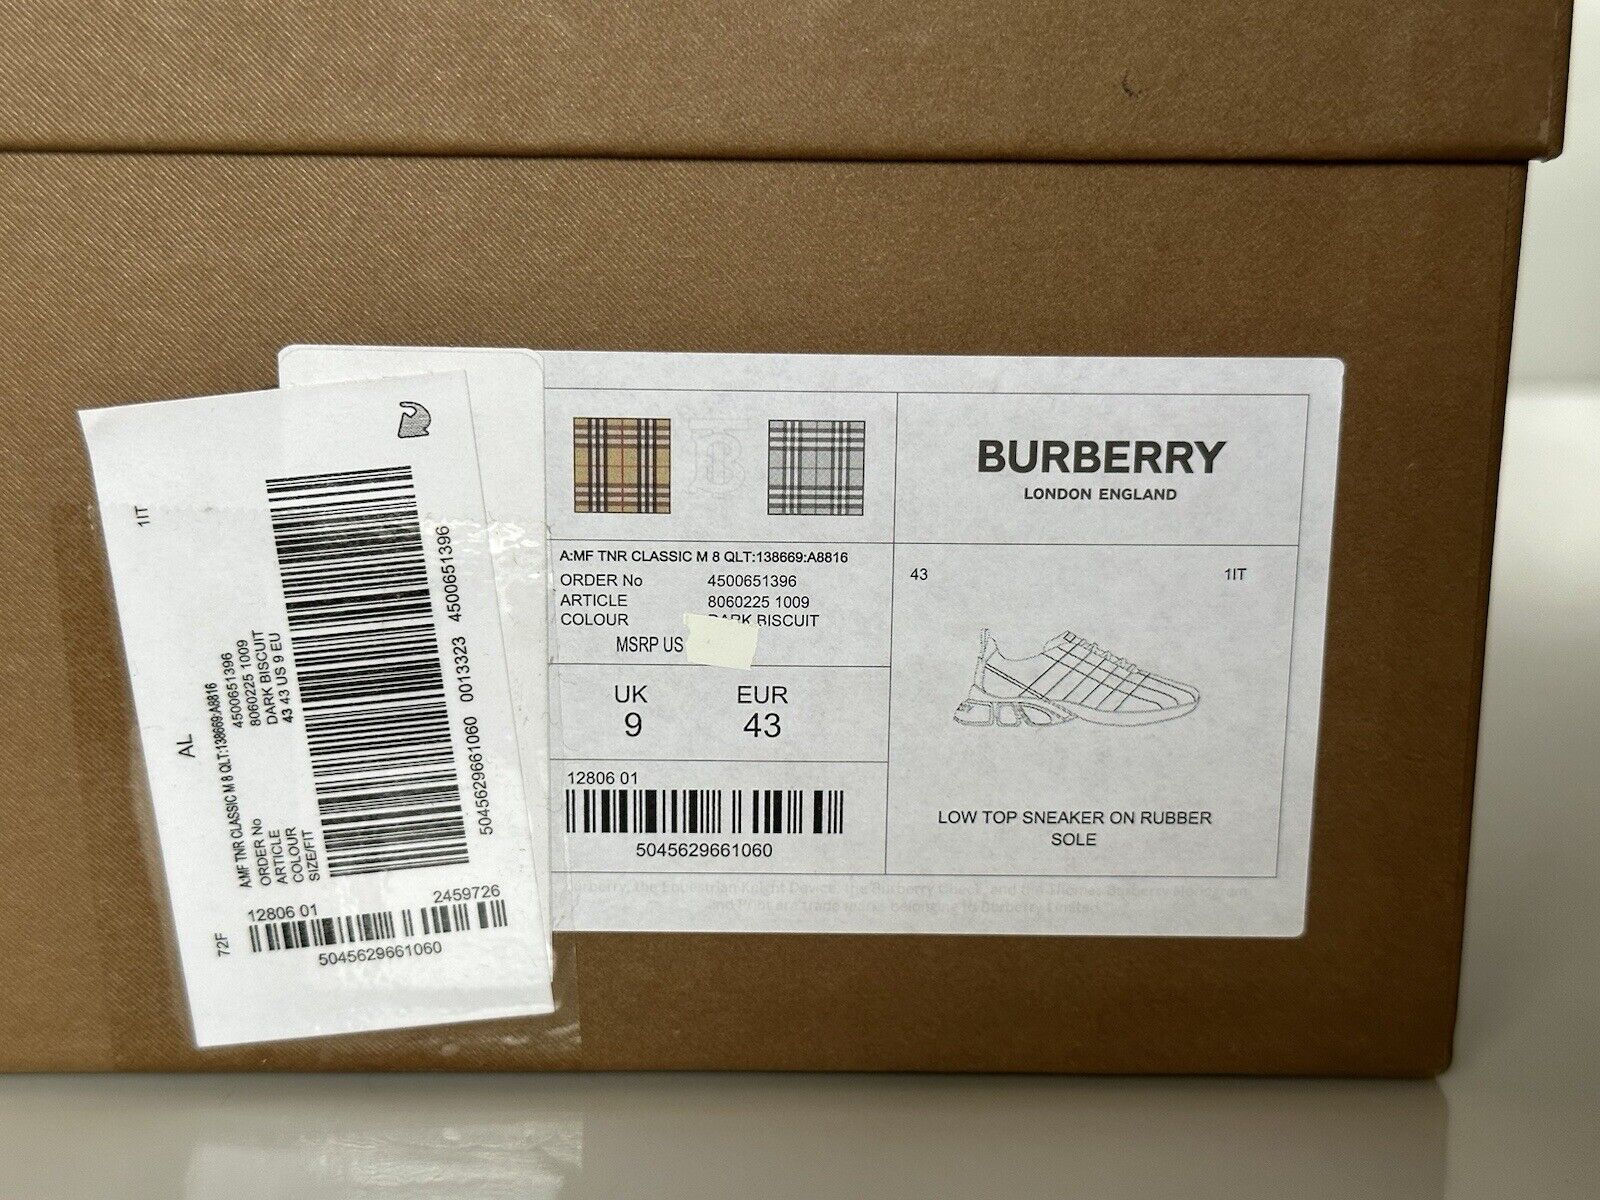 NIB $850 Burberry Стеганые кожаные кроссовки цвета бисквита 10 США (43 ЕС) 8060225 IT 